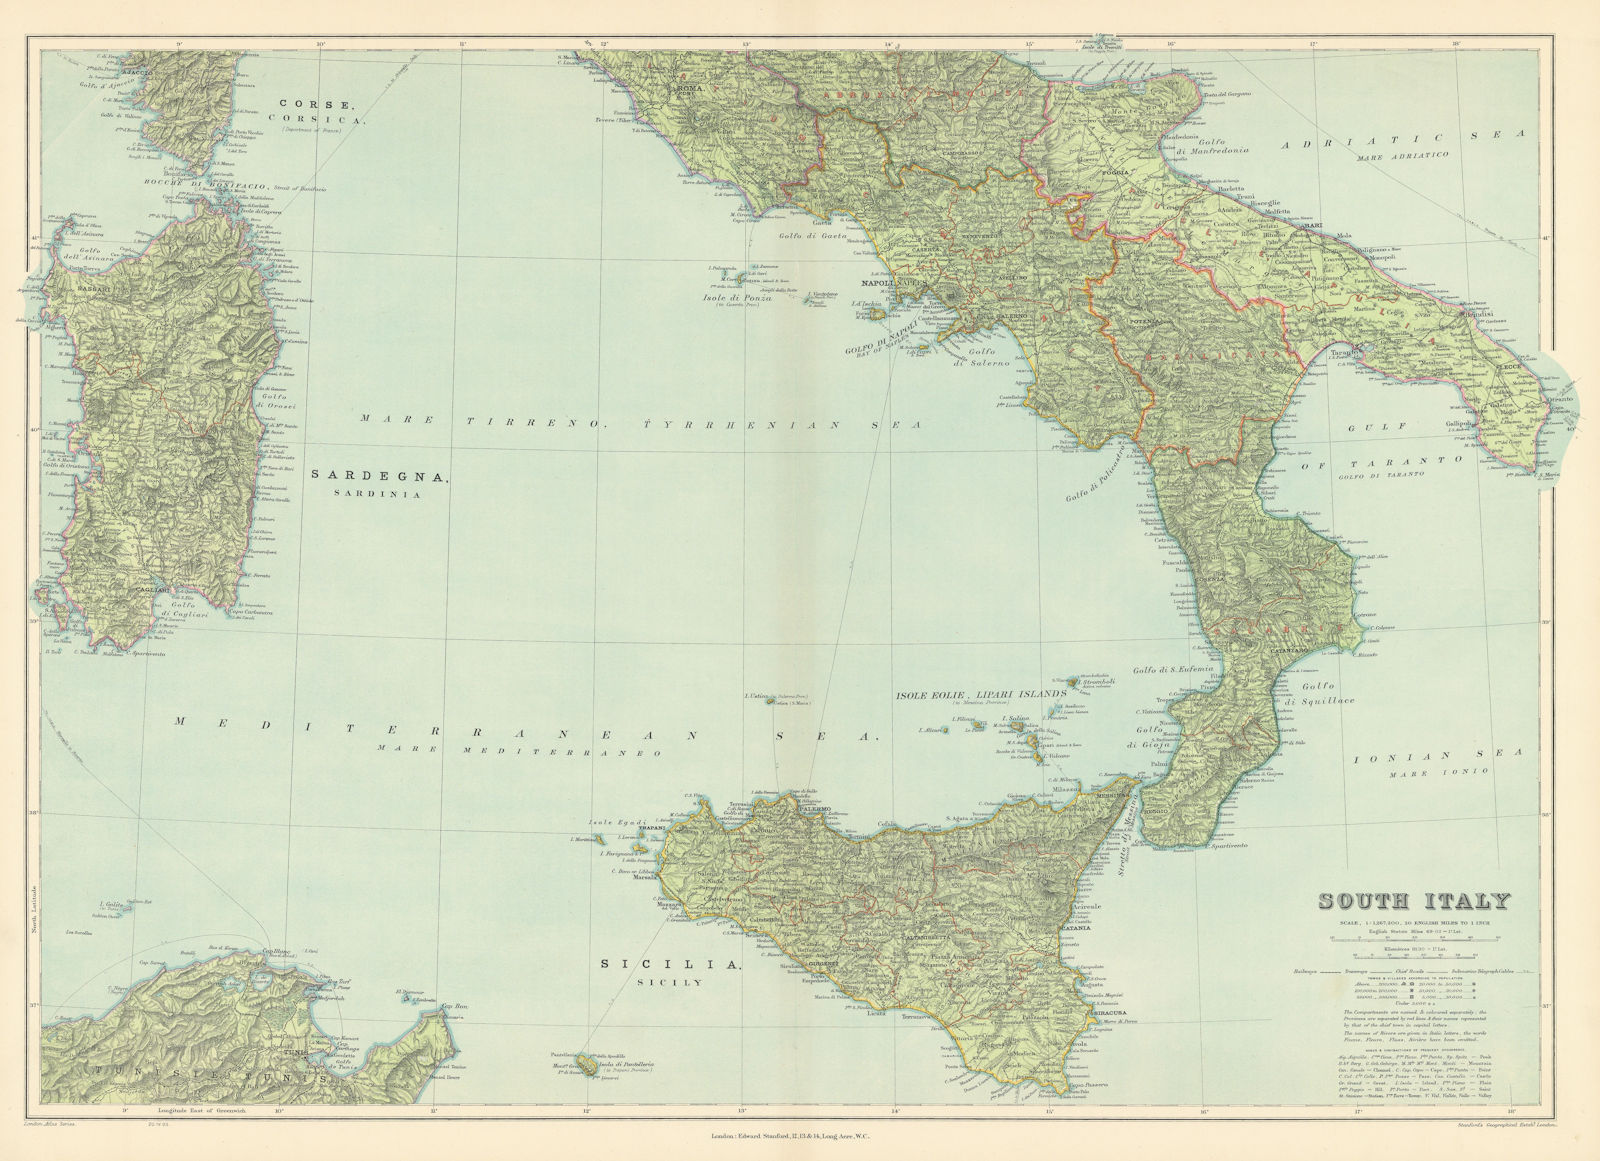 Associate Product South Italy. Sicily Calabria Puglia Abruzzo Lazio Campania. STANFORD 1904 map